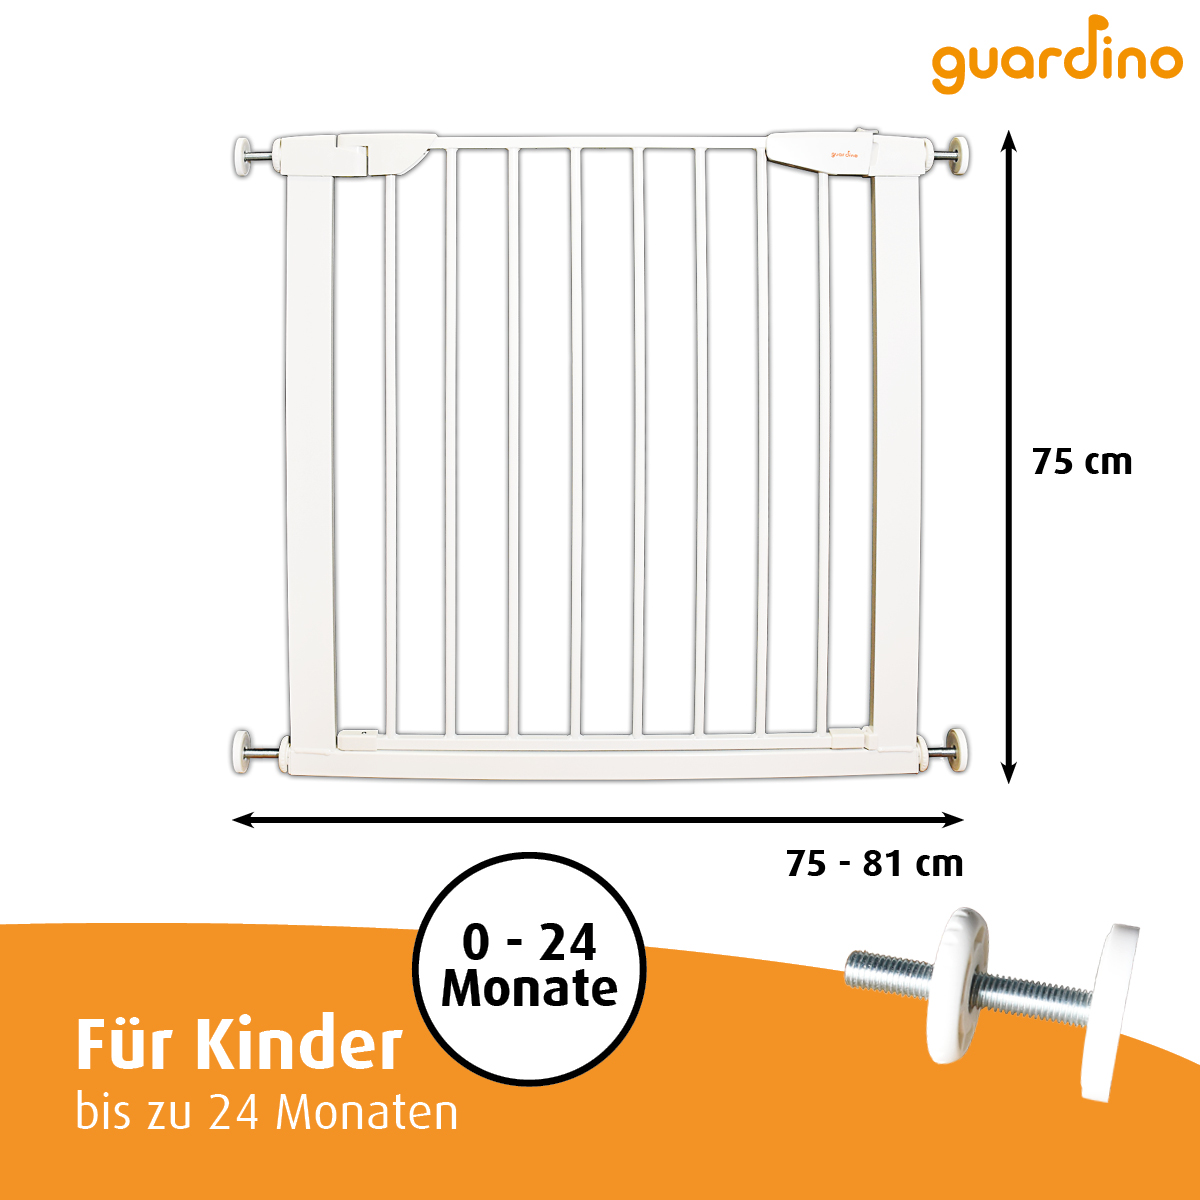 Guardino Türschutzgitter 75-81 cm, erweiterbar bis 109 cm - Treppenschutzgitter ohne Bohren